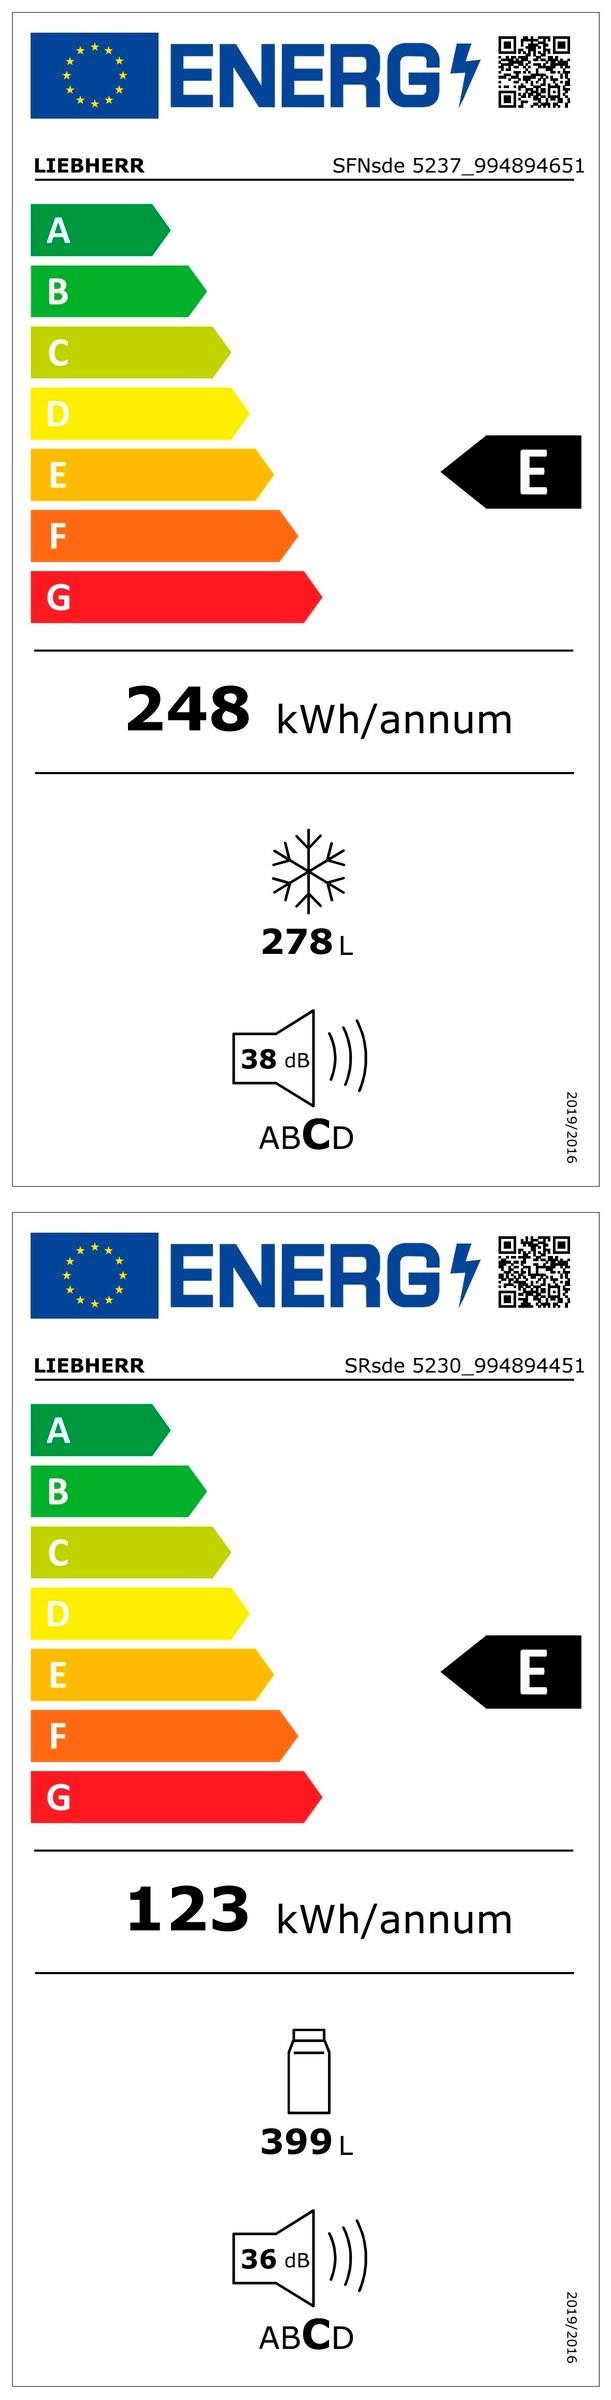 Etiqueta de Eficiencia Energética - XRFsd 5230